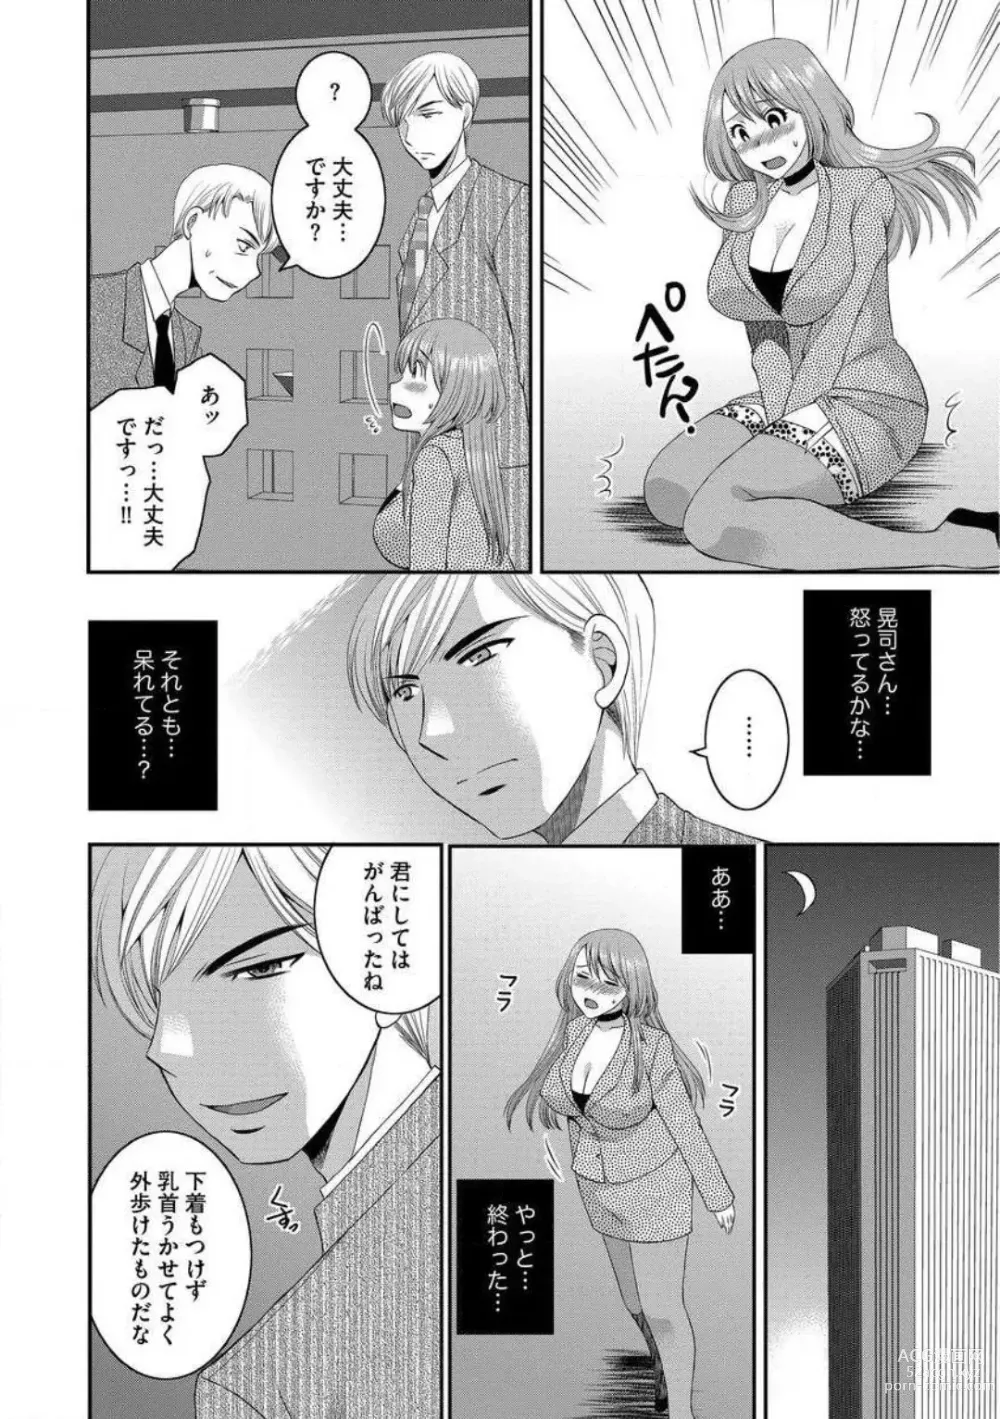 Page 16 of manga Otou-san to Ecchi. 1-6